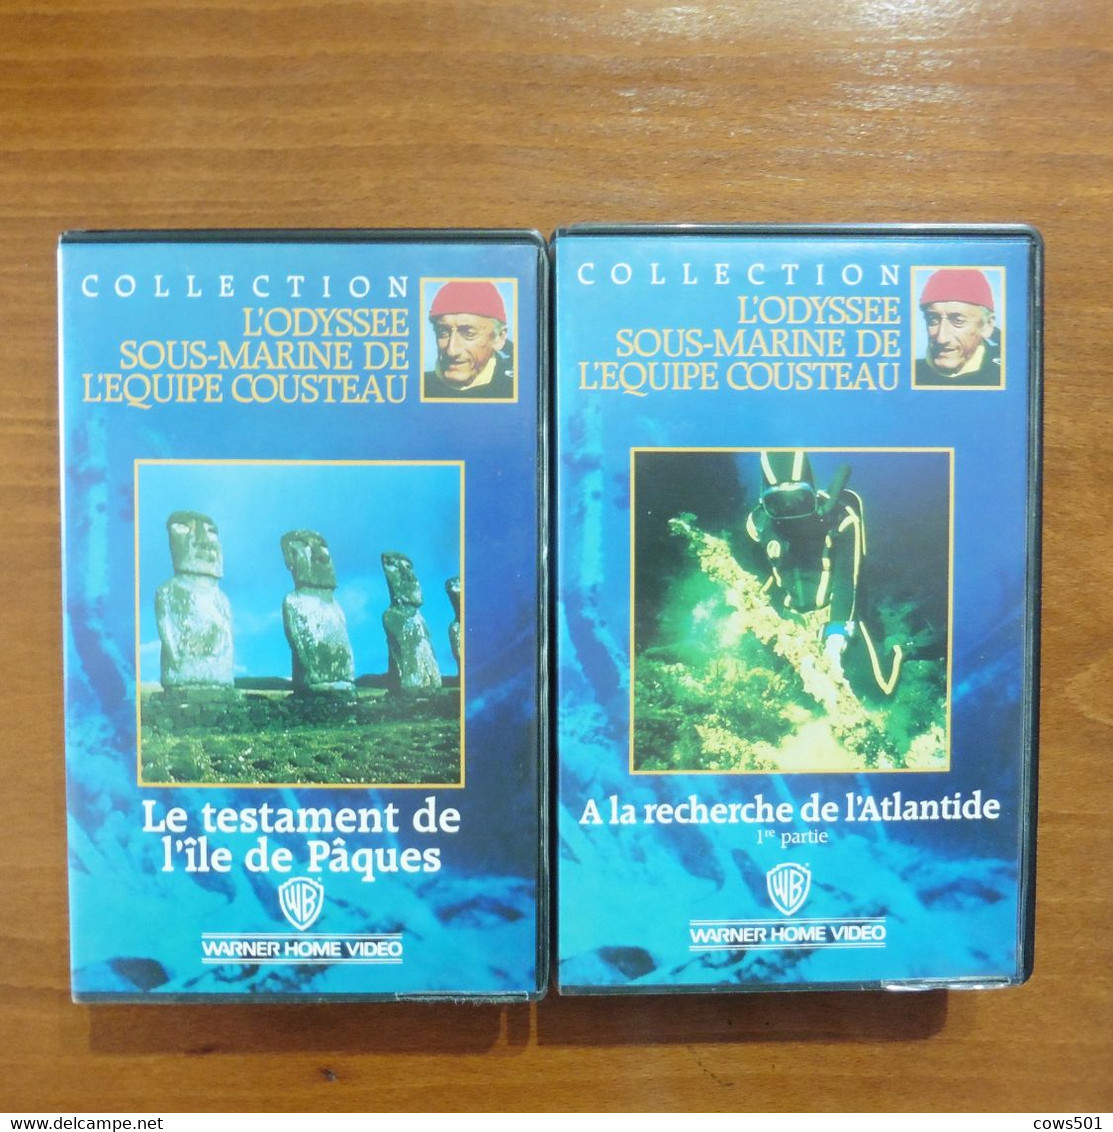 10 cassettes  VHS L'Odyssée sous- Marine de l'équipe  du Commandant  Cousteau